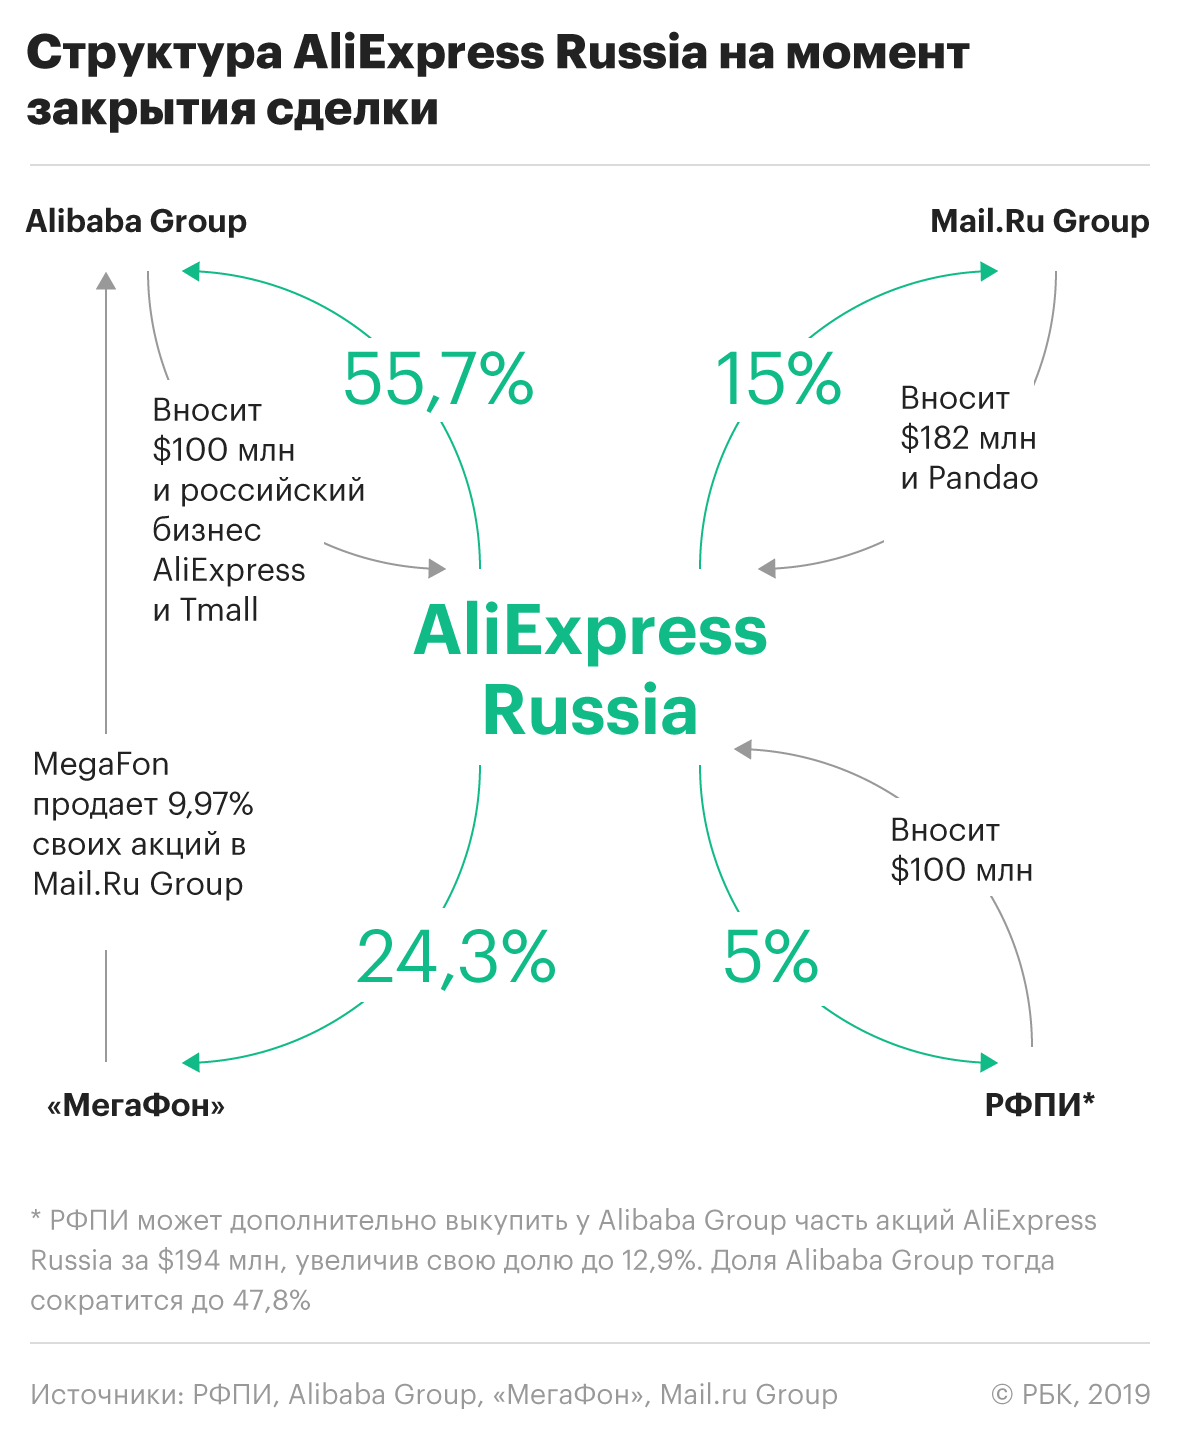 Акционеры AliExpress Russia согласовали параметры совместного предприятия